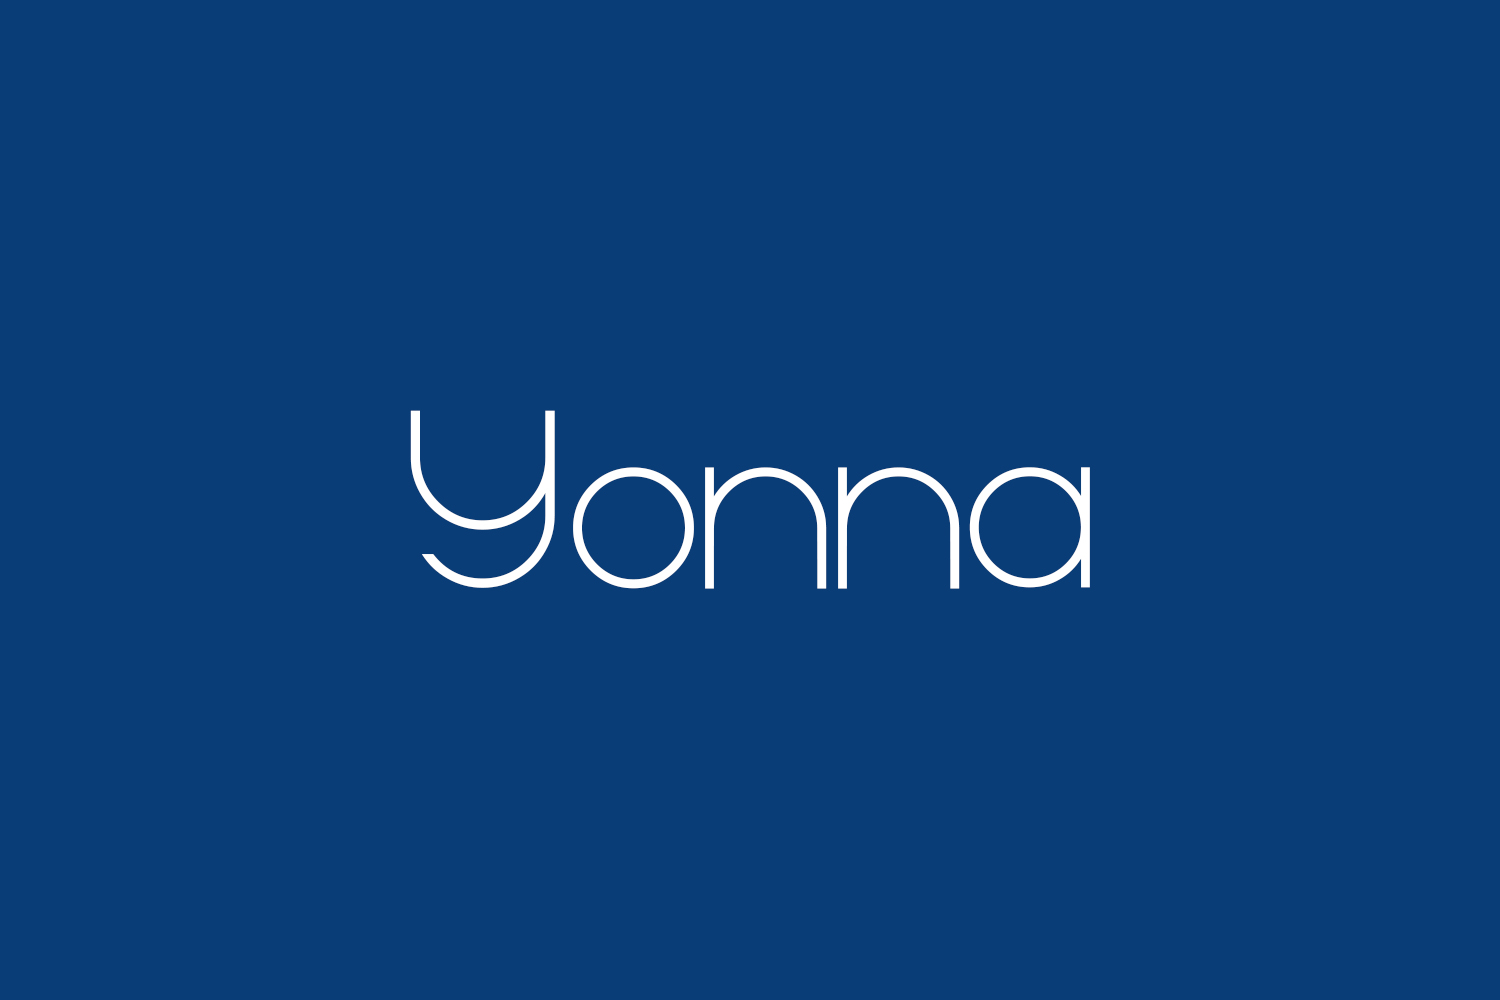 Yonna Free Font